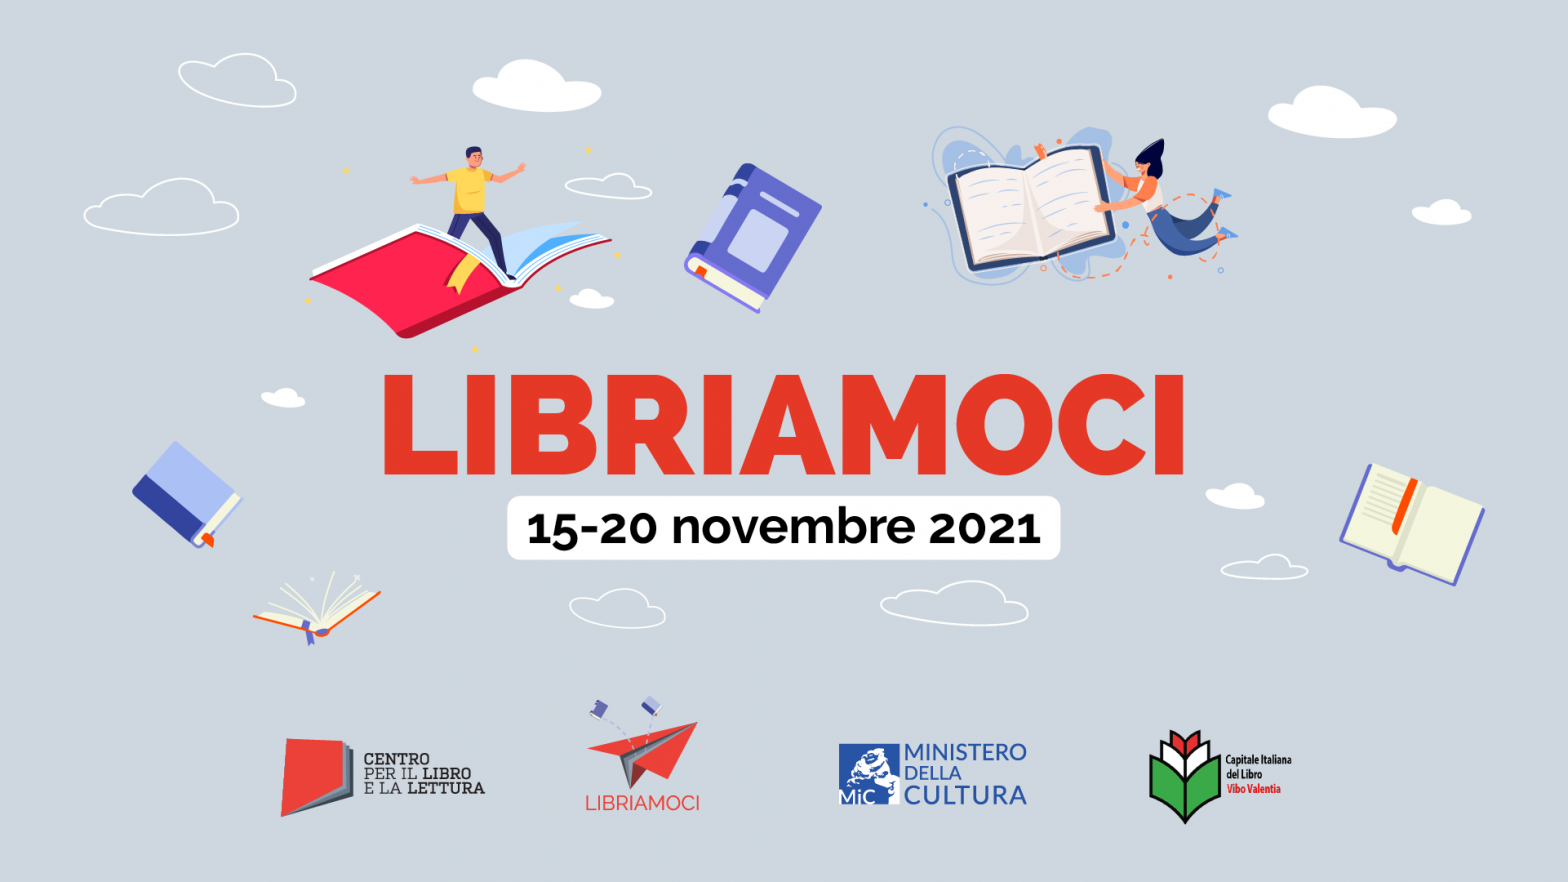 [VIDEO] “Leggere è un gioco”: a Vibo Valentia l’inaugurazione di Libriamoci 2021 con il video di Luca Zingaretti